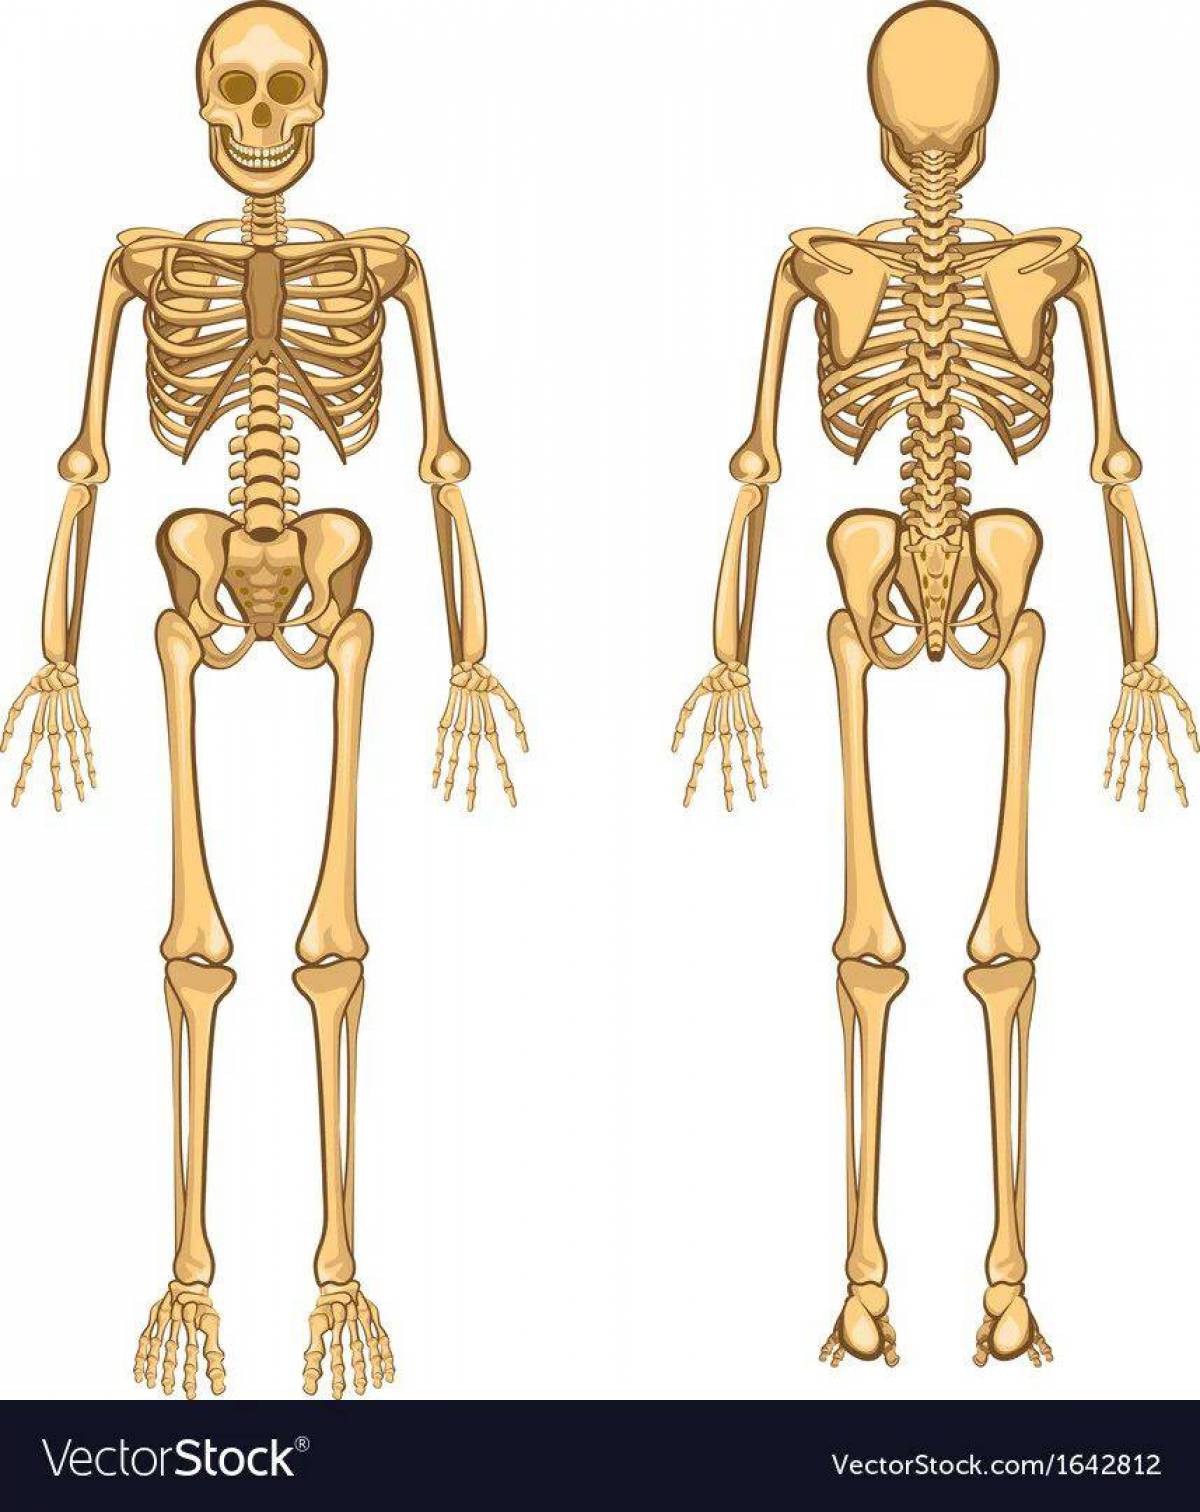 Скелет человека для детей #11